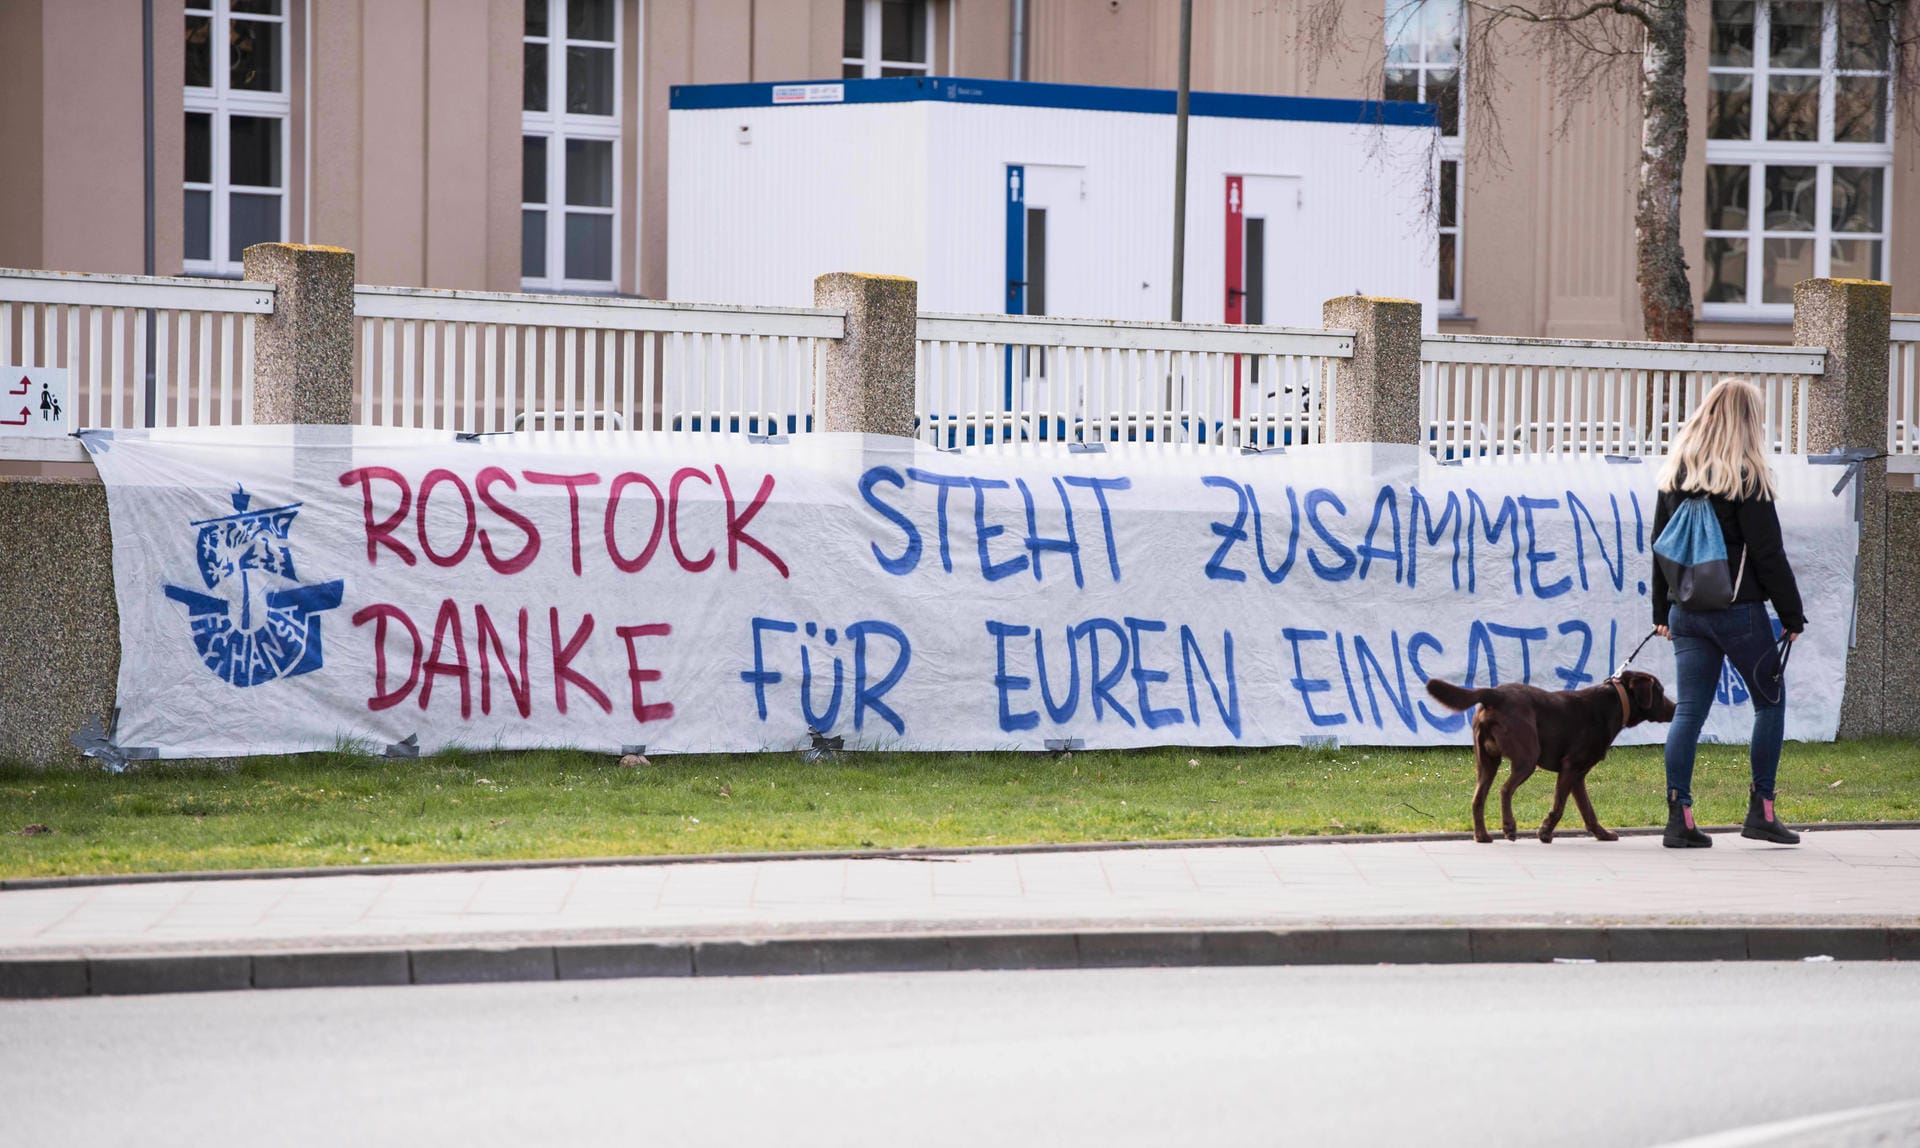 Die Fans von Hansa Rostock haben vor der Universitätsklinik Rostock ein Dankes-Plakat aufgehangen. "Rostock steht zusammen", heißt es dort. Die Hansa-Ultras zeigen volle Solidarität mit den Pflegekräften und Ärzten.